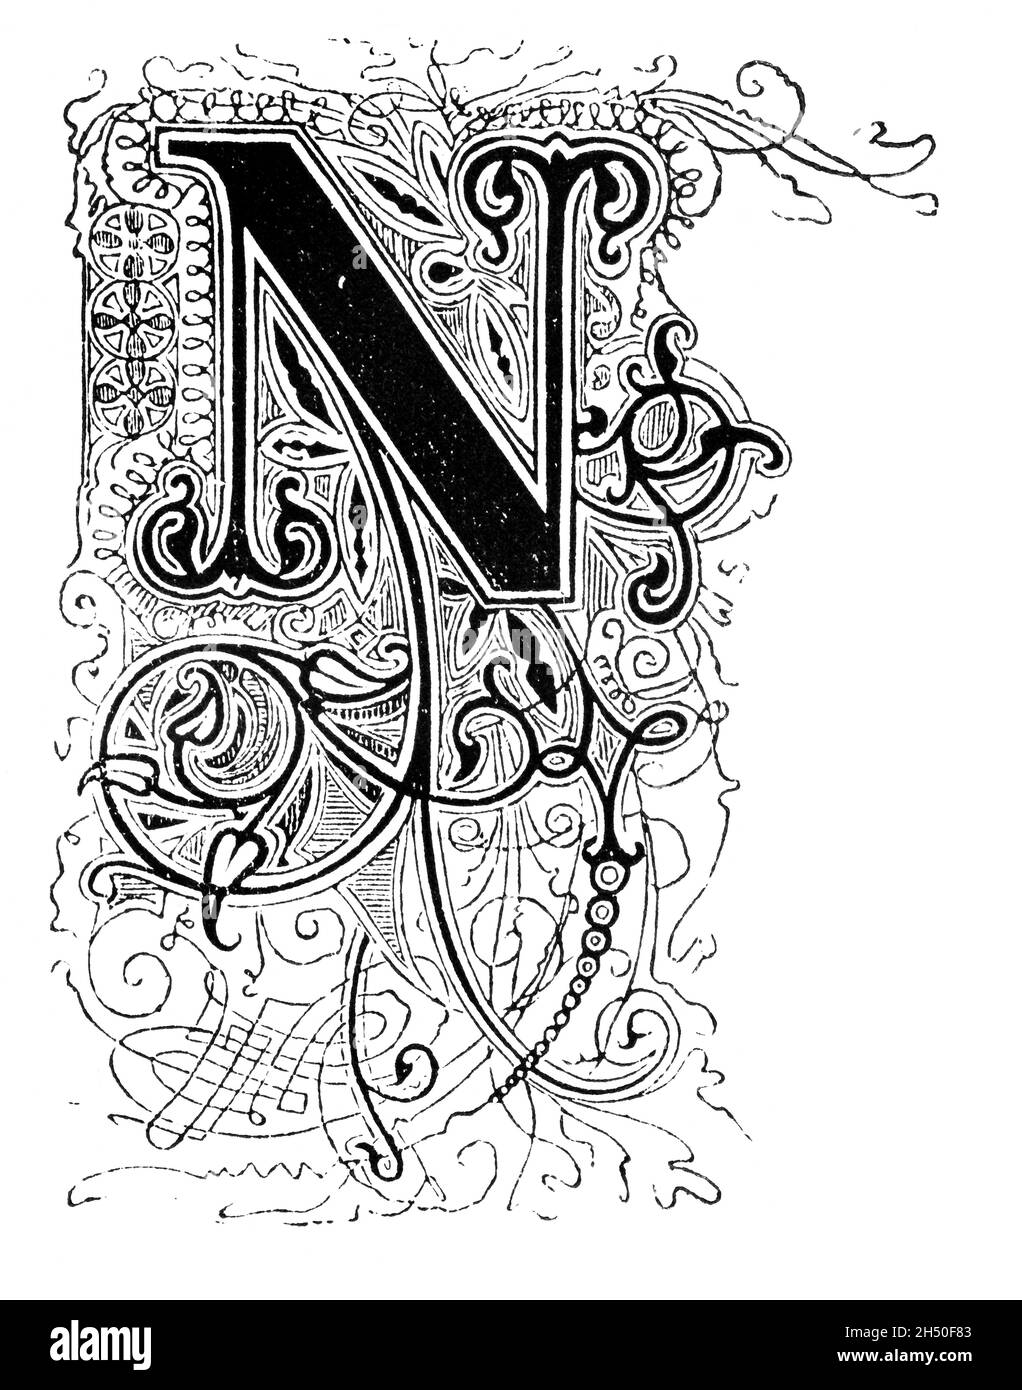 Großer dekorativer verzierter Buchstabe N, mit Blumenverzierung oder Ornament. Antike Vintage-Zeichnung Stockfoto